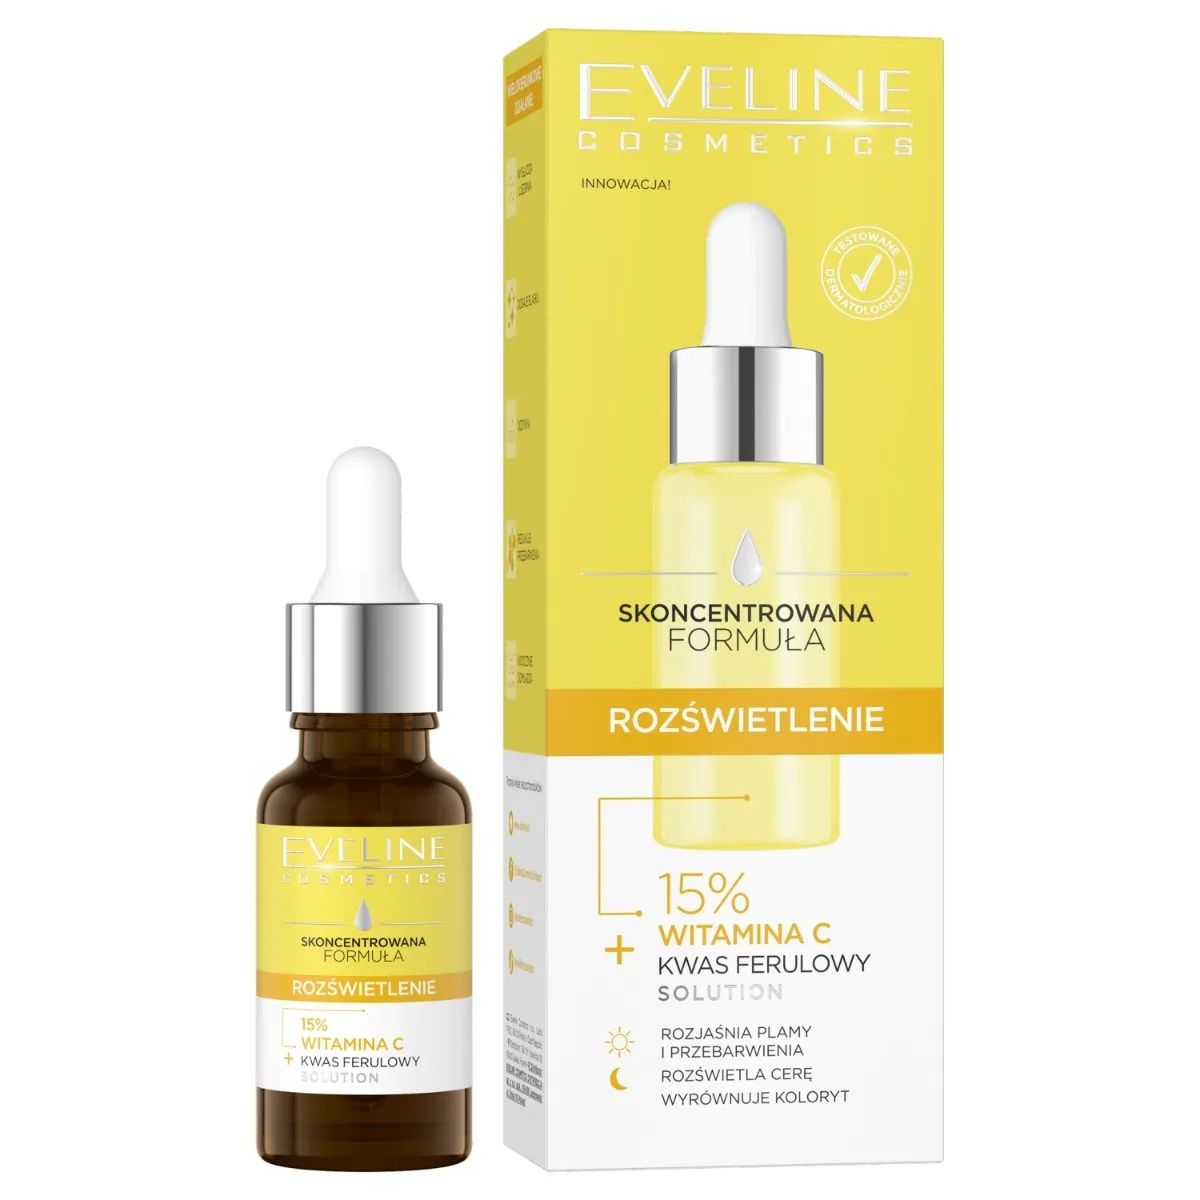 Eveline Cosmetics ROZŚWIETLENIE skoncentrowana formuła serum do twarzy, 18 ml